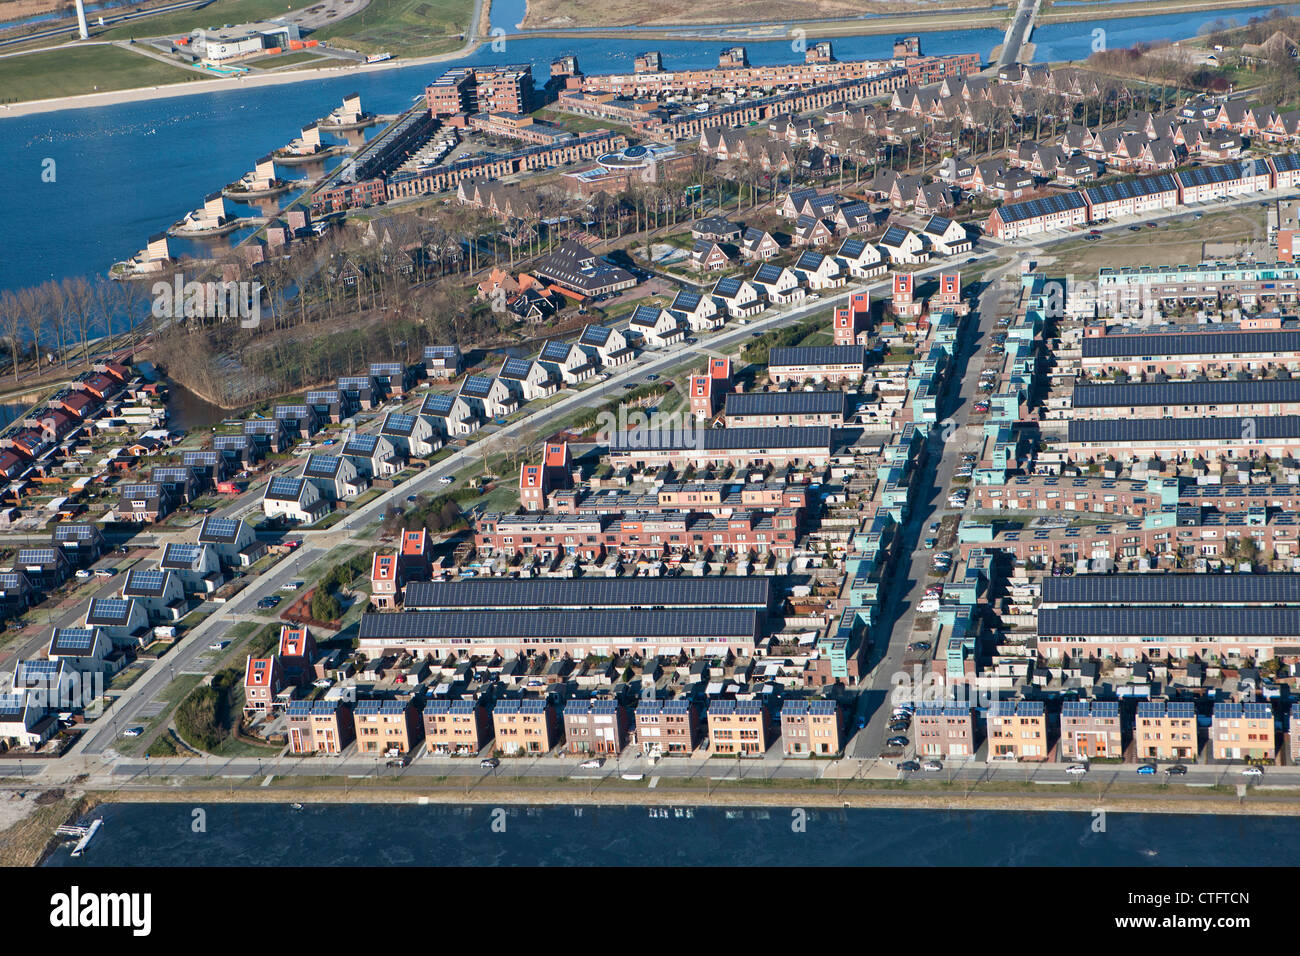 Los Países Bajos, Heerhugowaard, Antena, barrio llamado Ciudad del Sol, holandés: Stad van de Zon. Todas las casas con paneles solares. Foto de stock